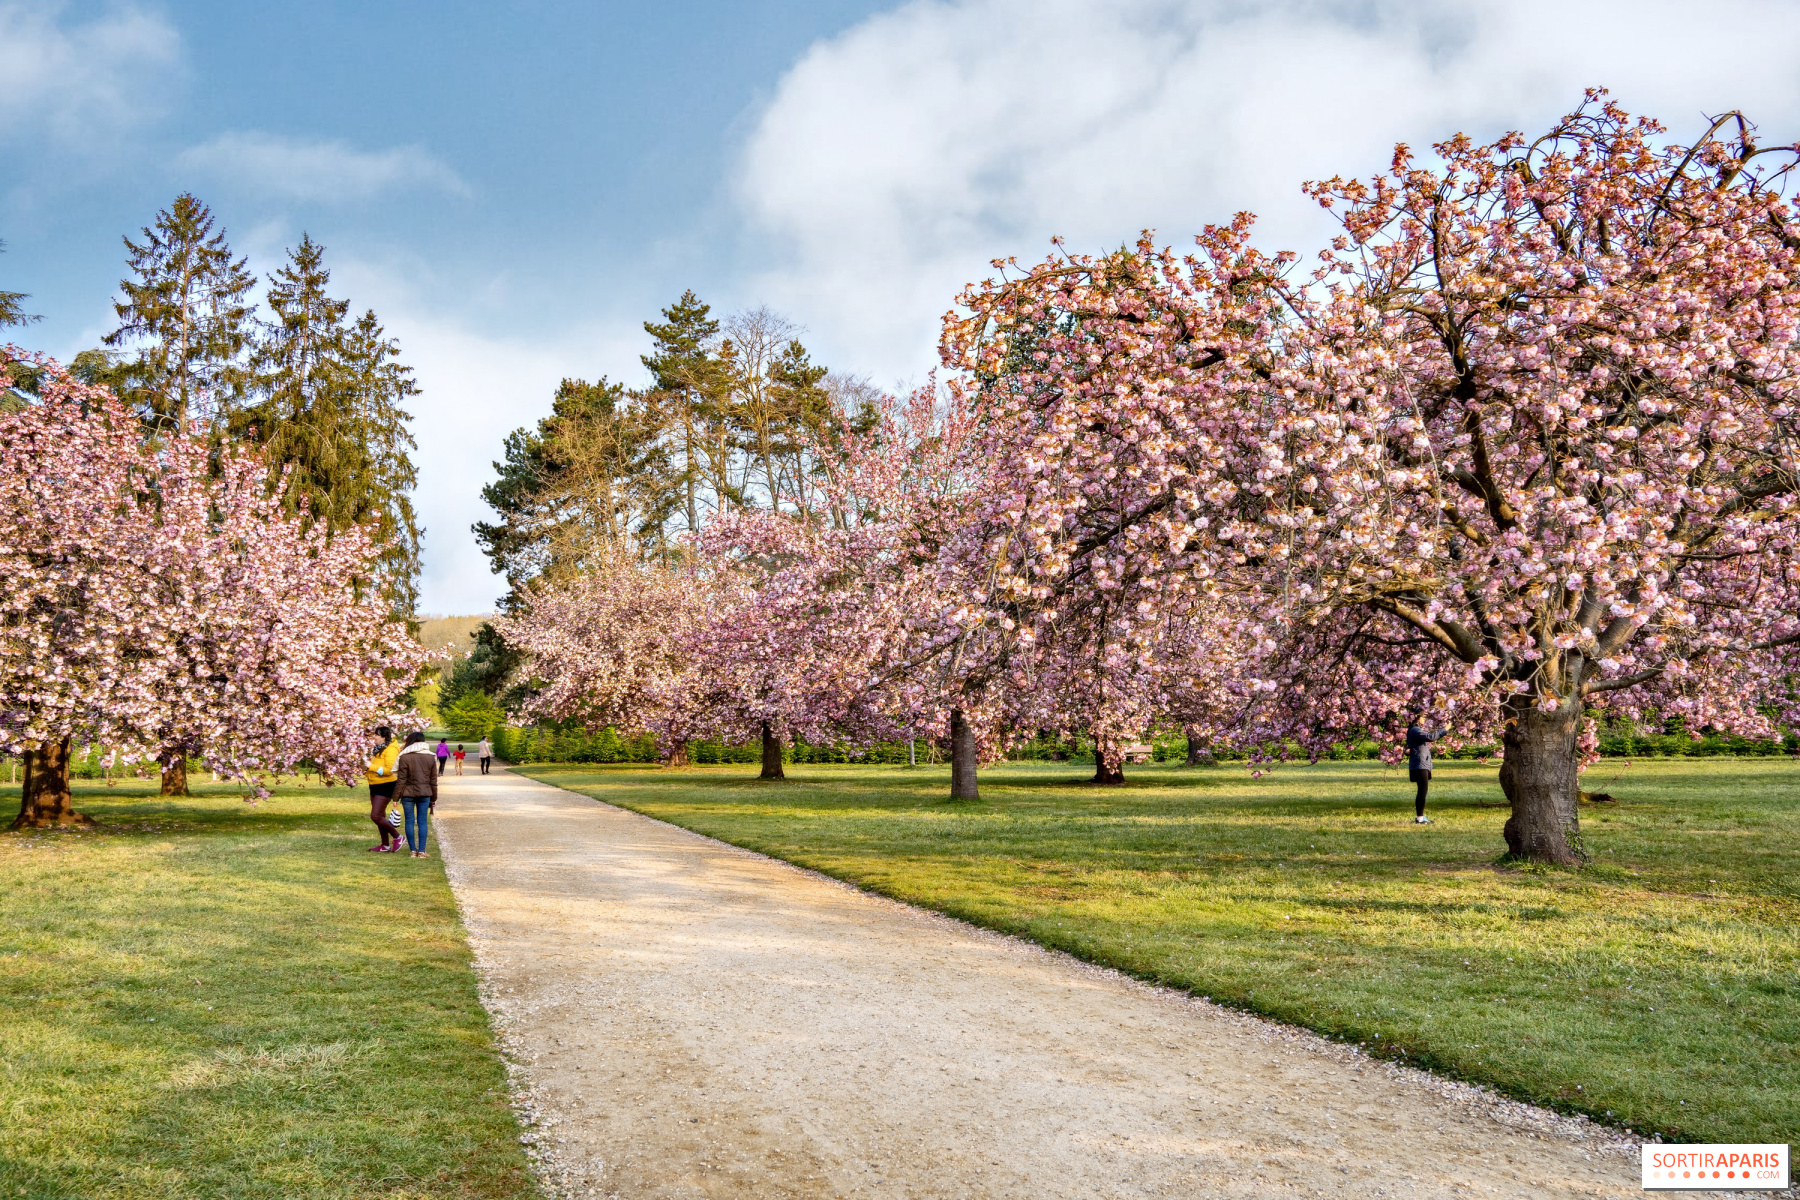 Parc du Domaine de Sceaux, a historic place with a verdant